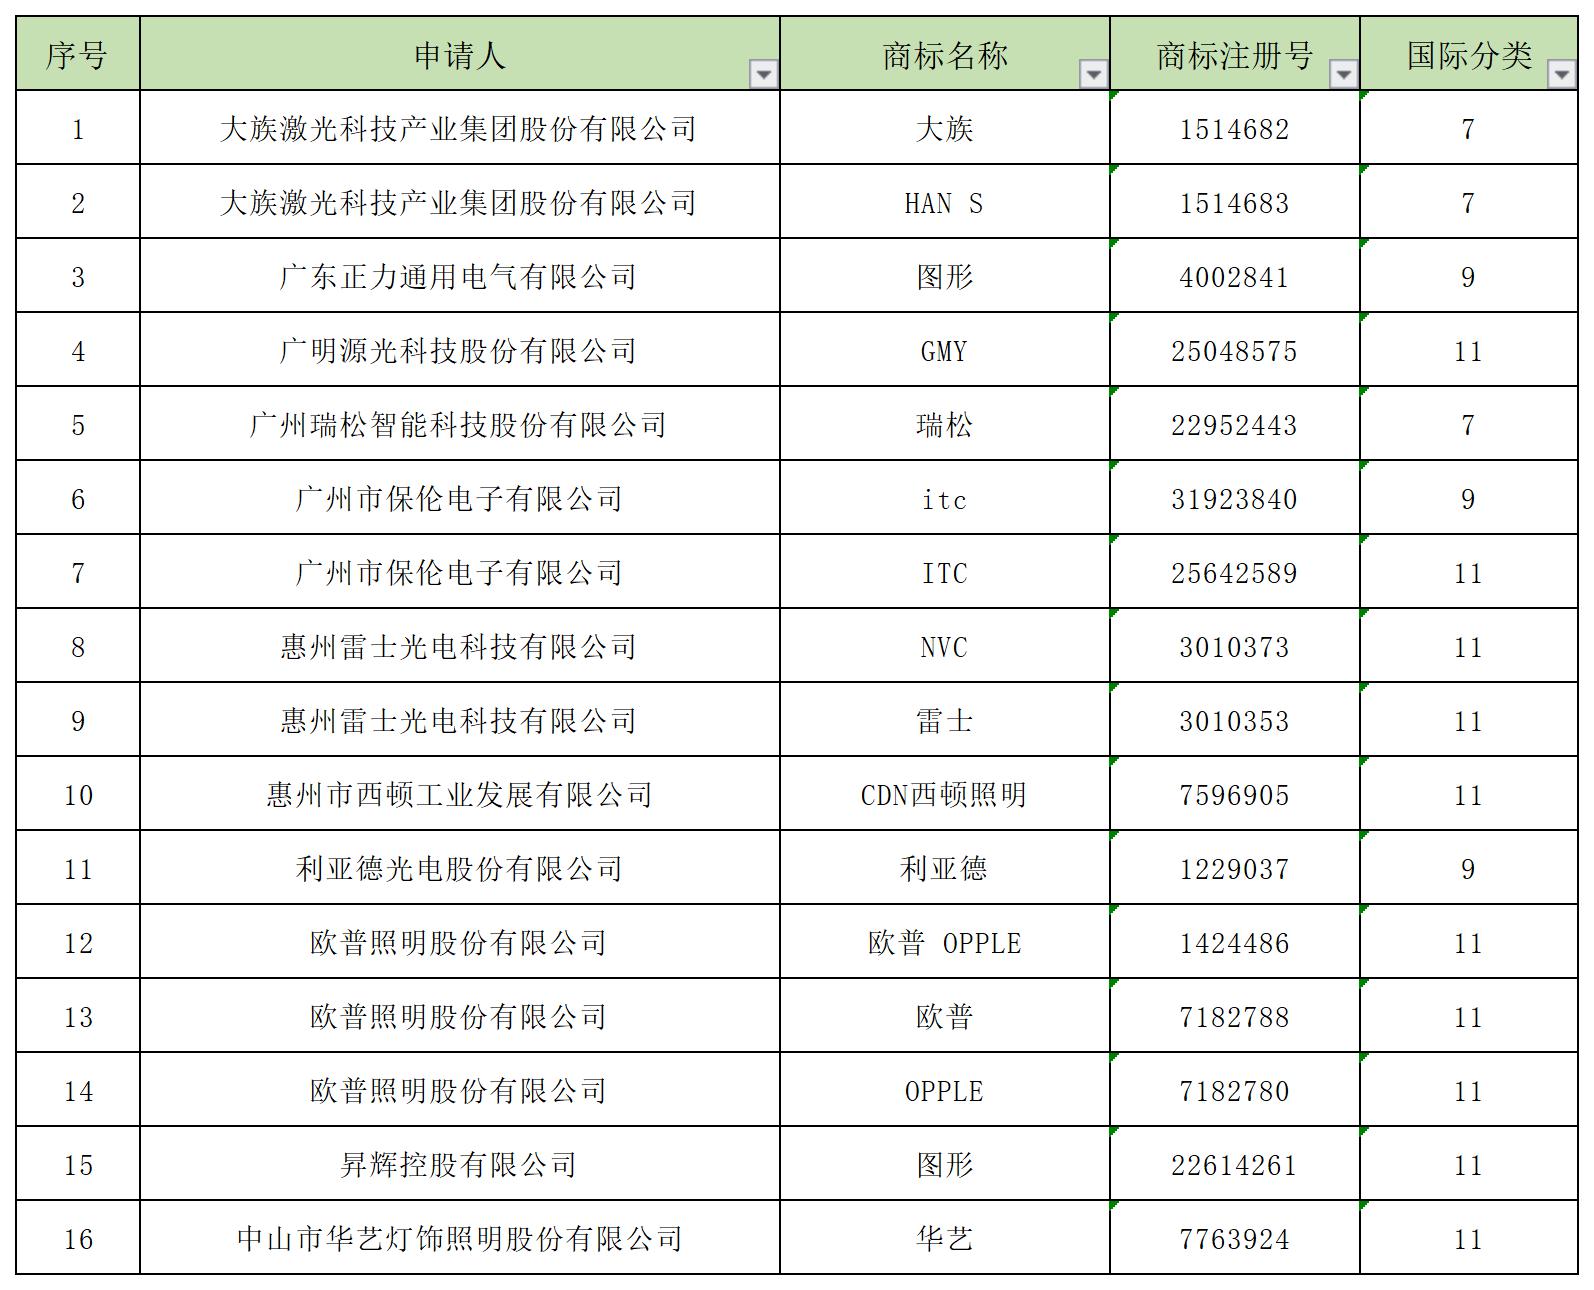 2021年度广东省重点商标保护名录纳入名单.jpg